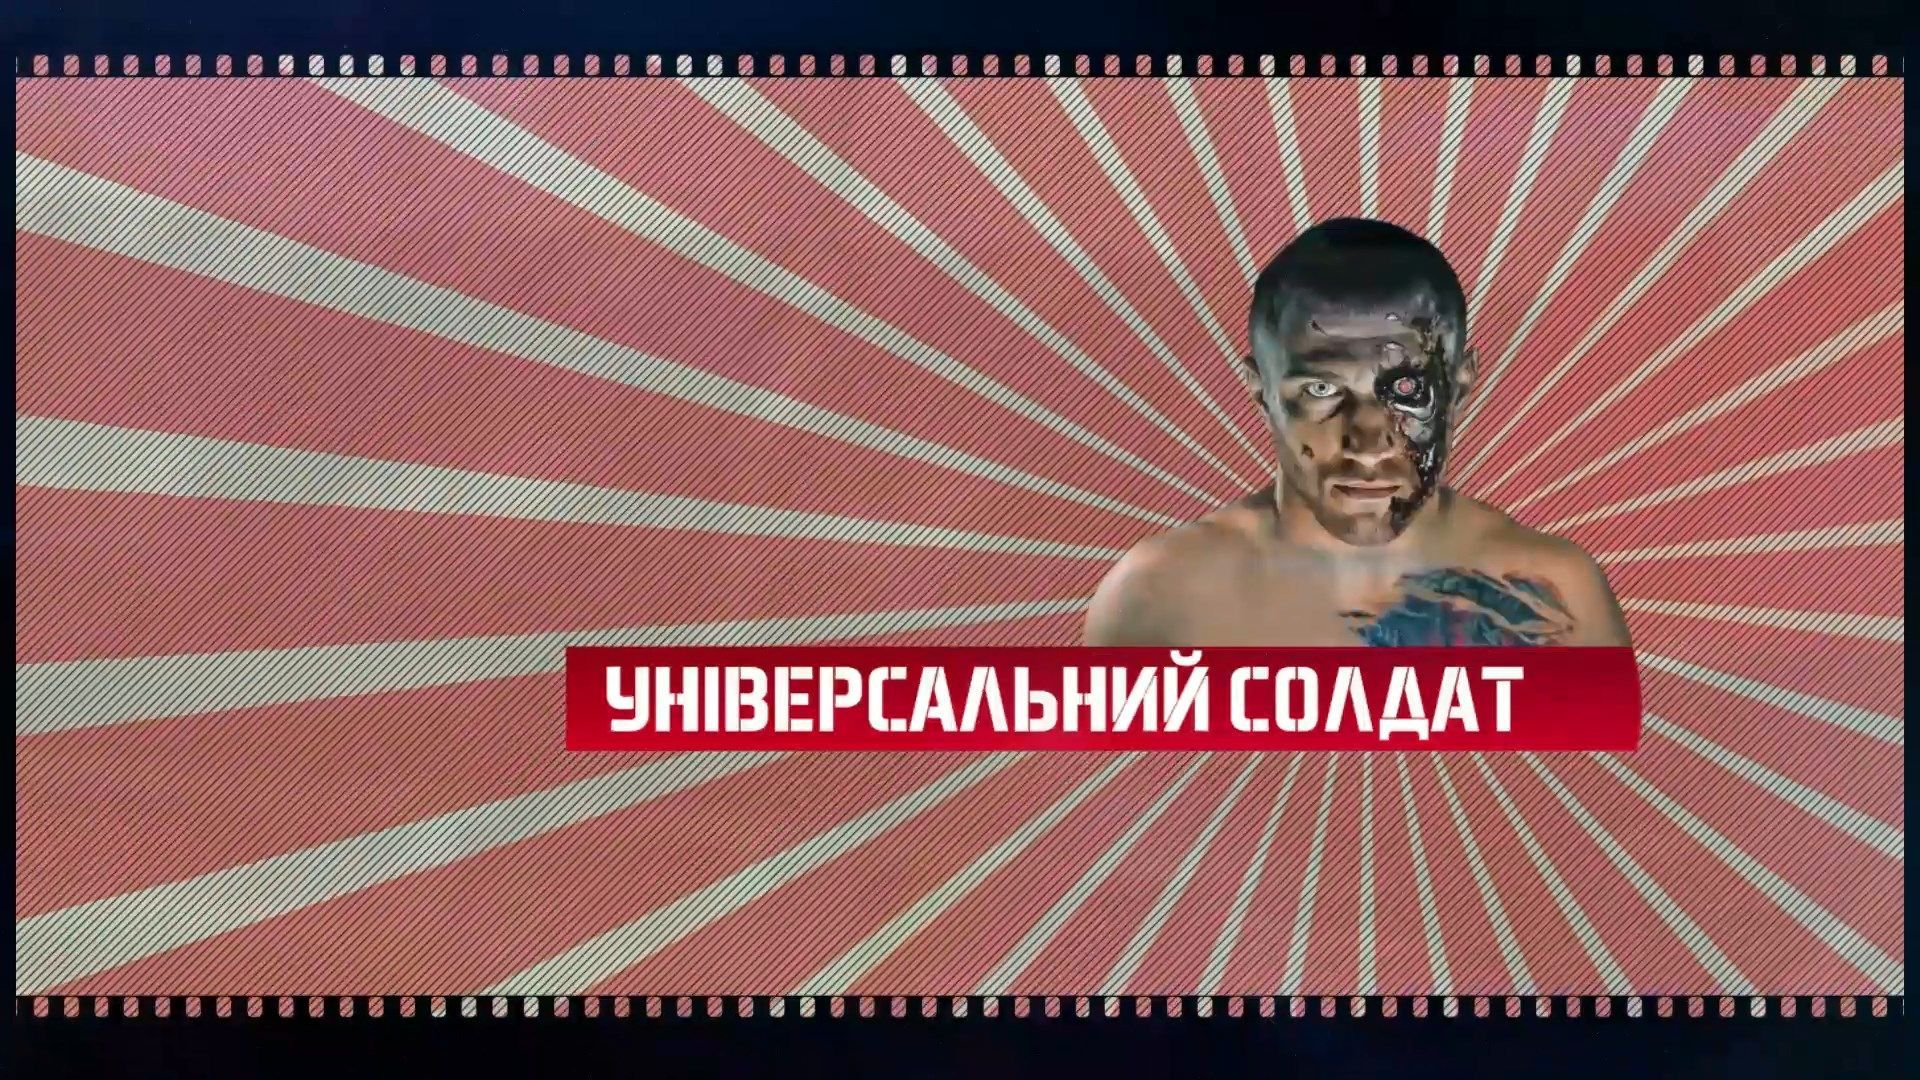 Ломаченко – универсальный "солдат", который овладел большинством видов спорта: видео